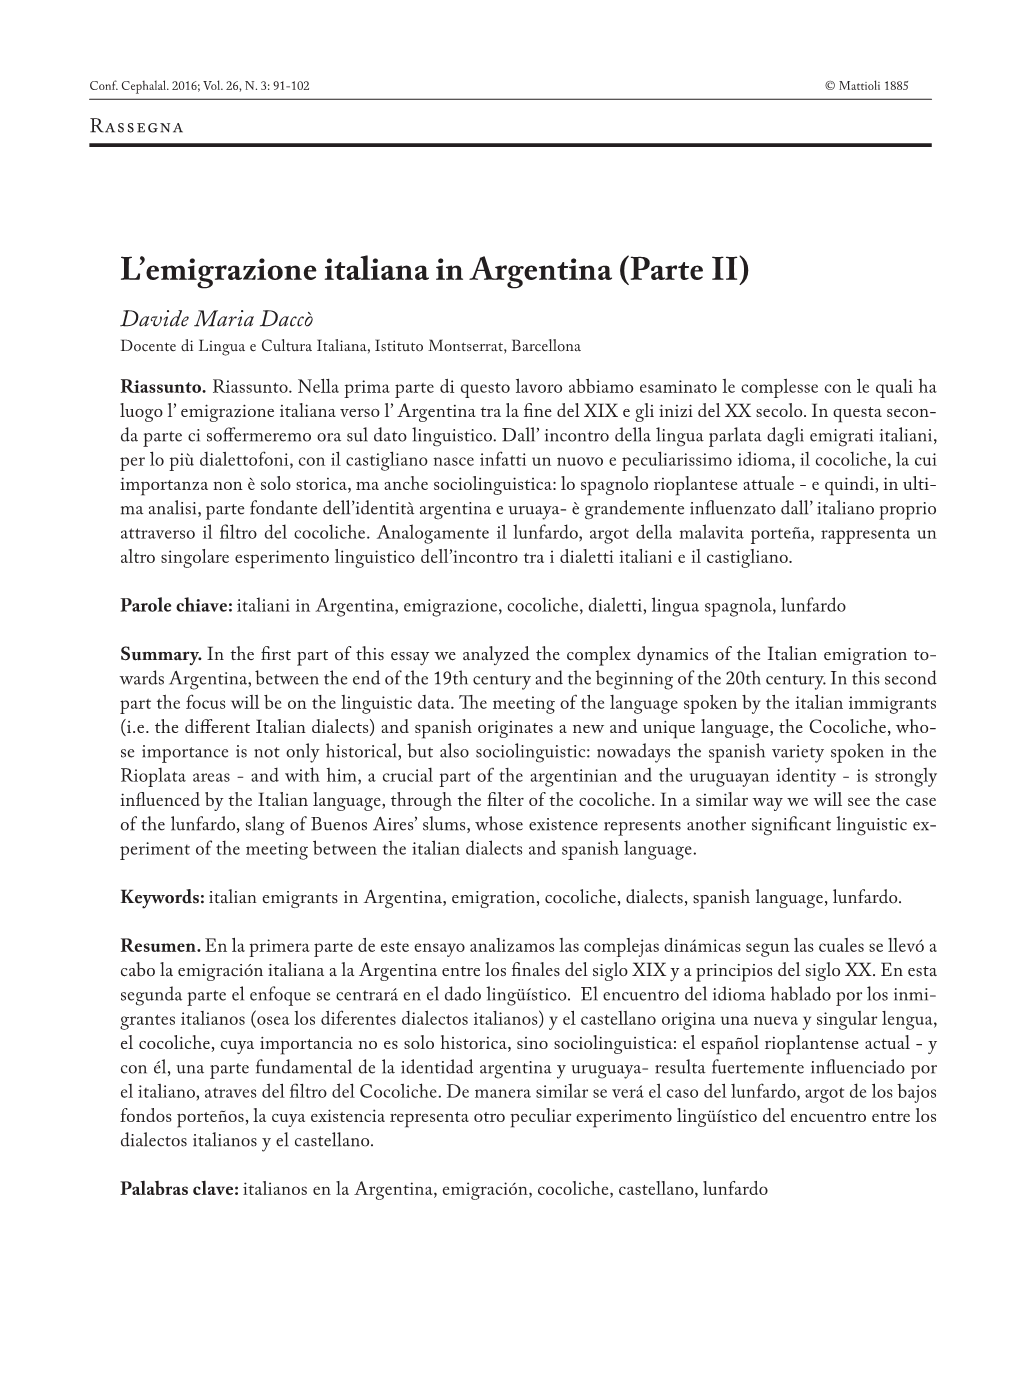 L'emigrazione Italiana in Argentina (Parte